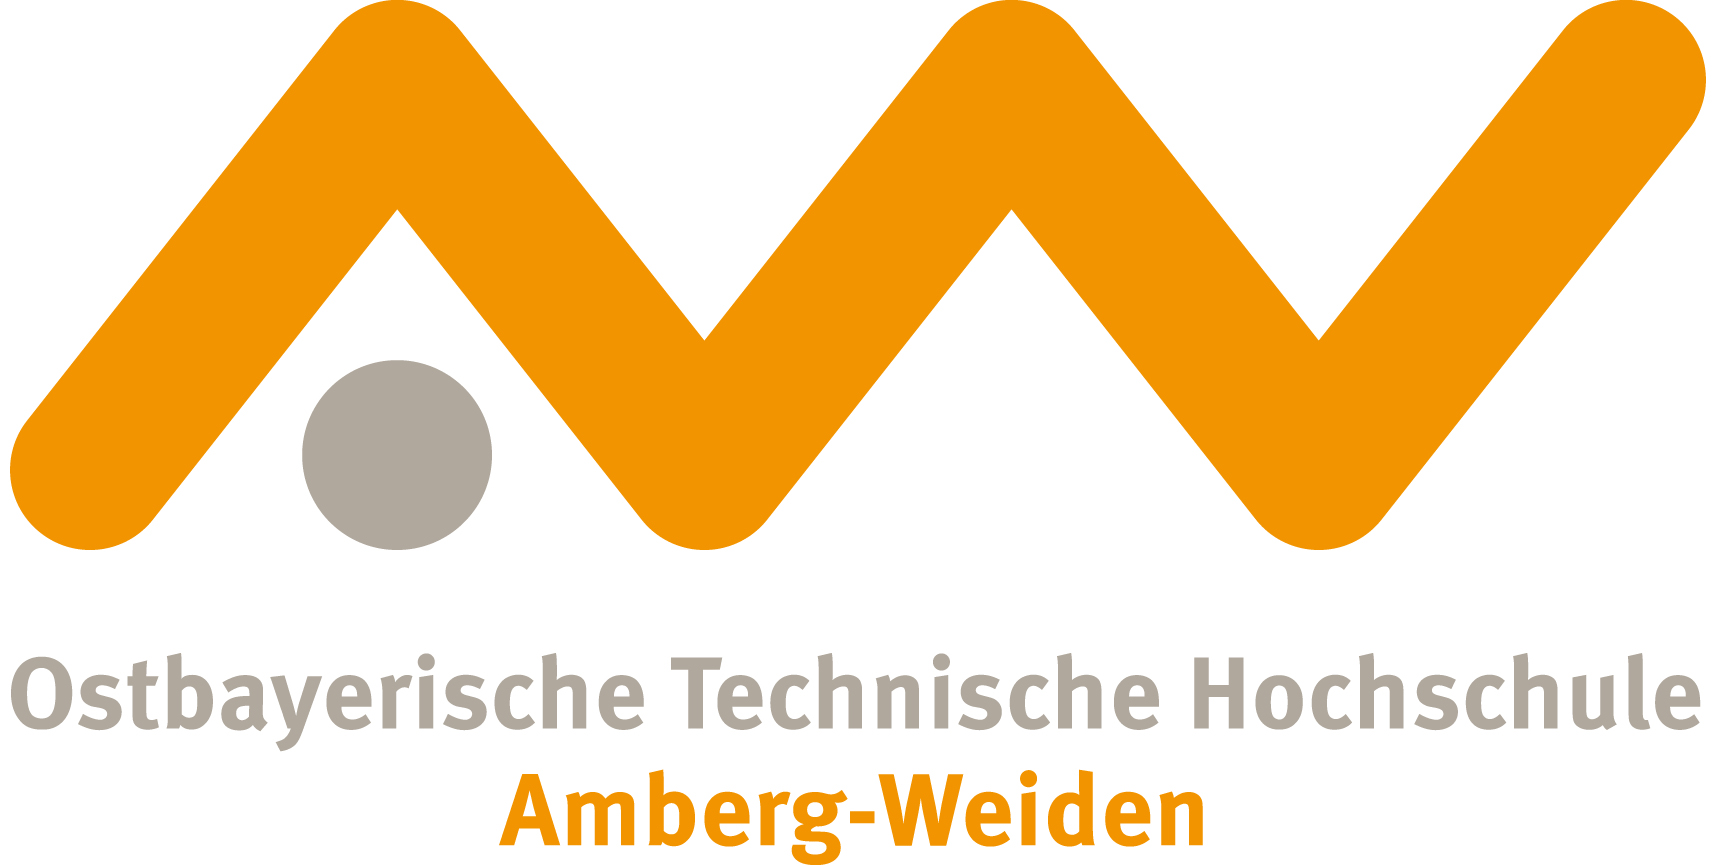 Die Ostbayerische Technische Hochschule Amberg- Weiden stellt sich vor